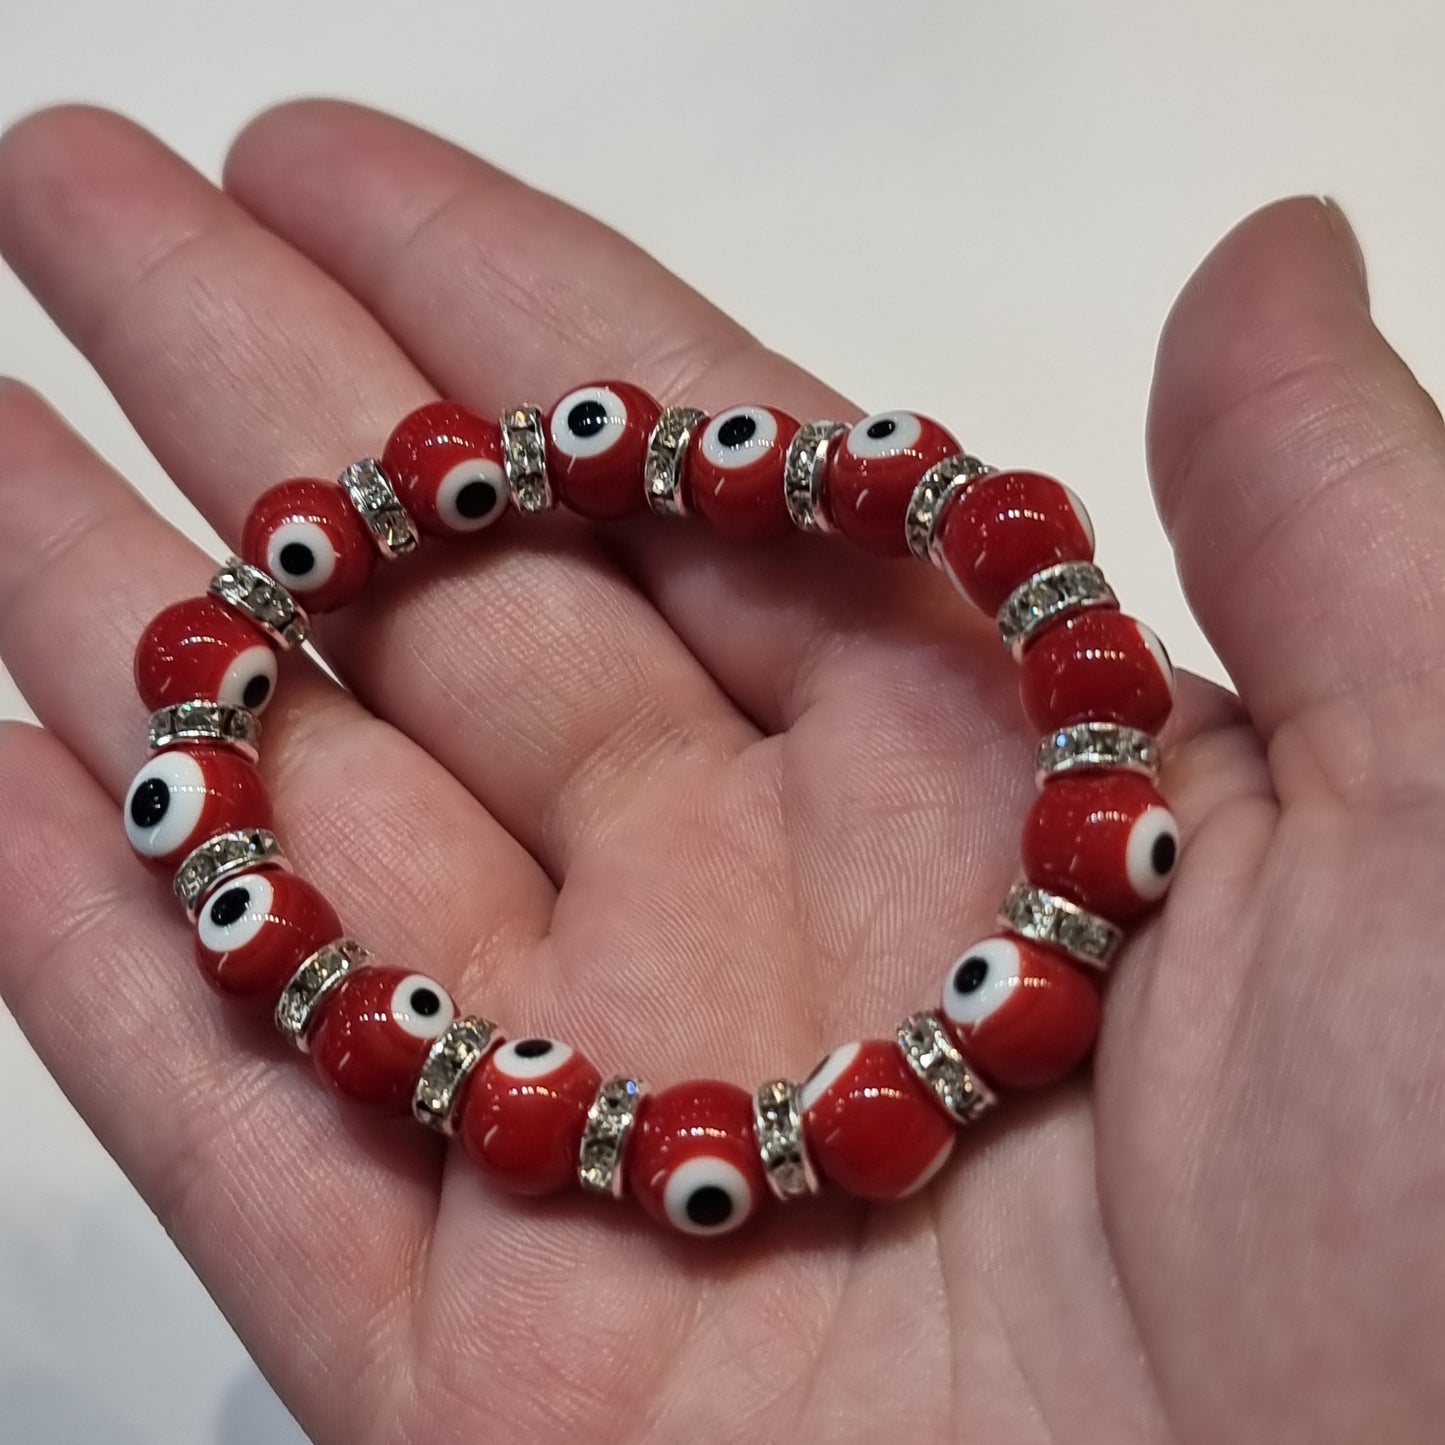 Red evil eye bracelet - Rivendell Shop